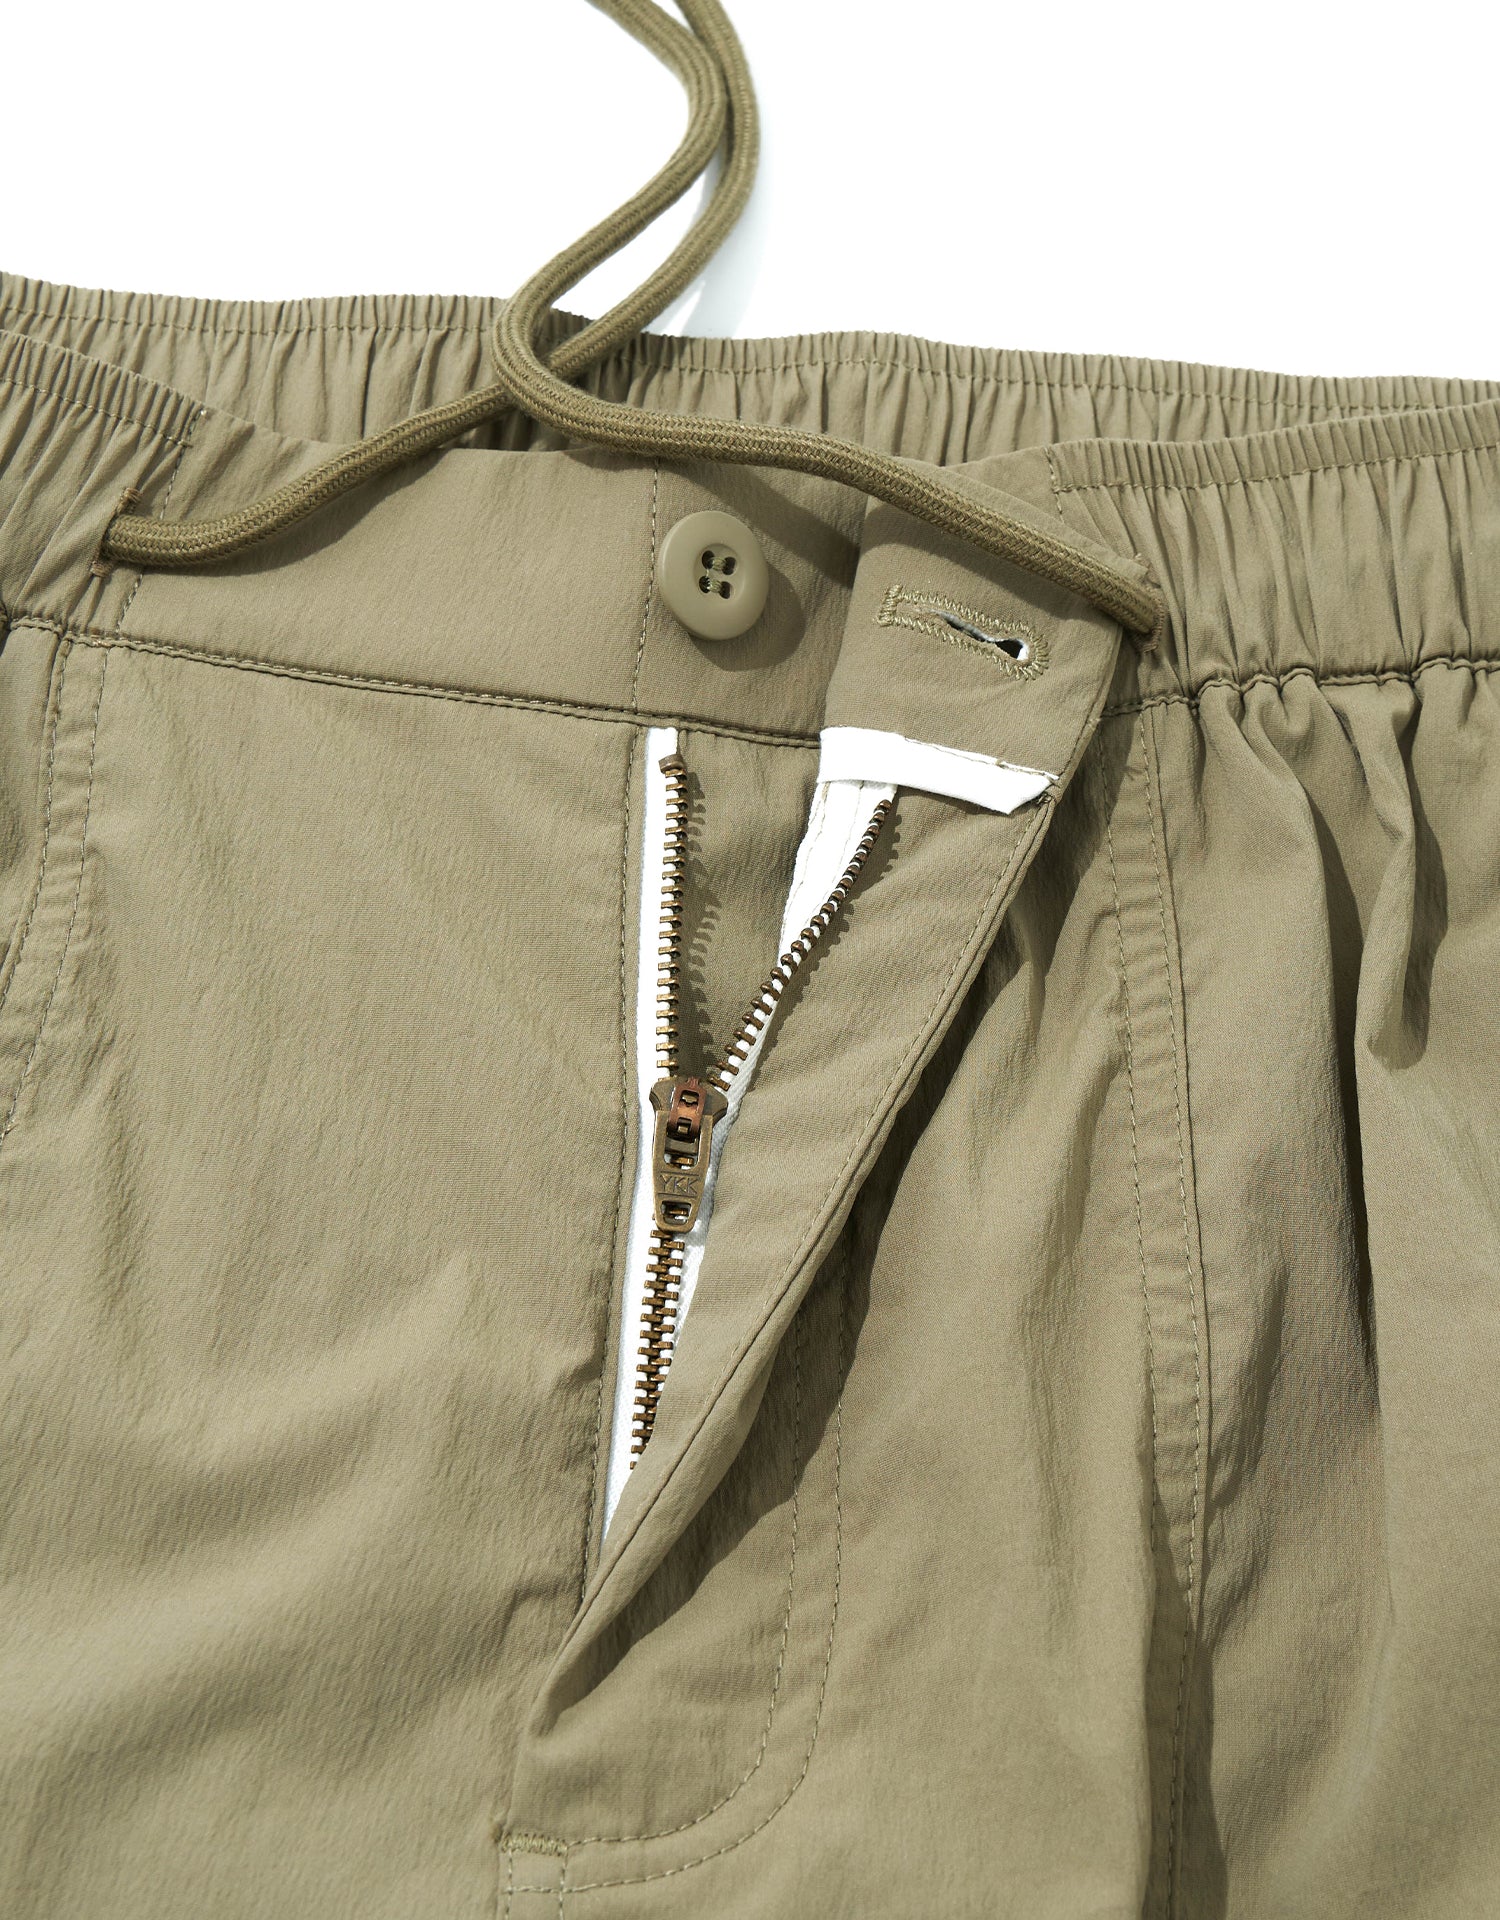 TopBasics Zip-Pockets Cargo Shorts